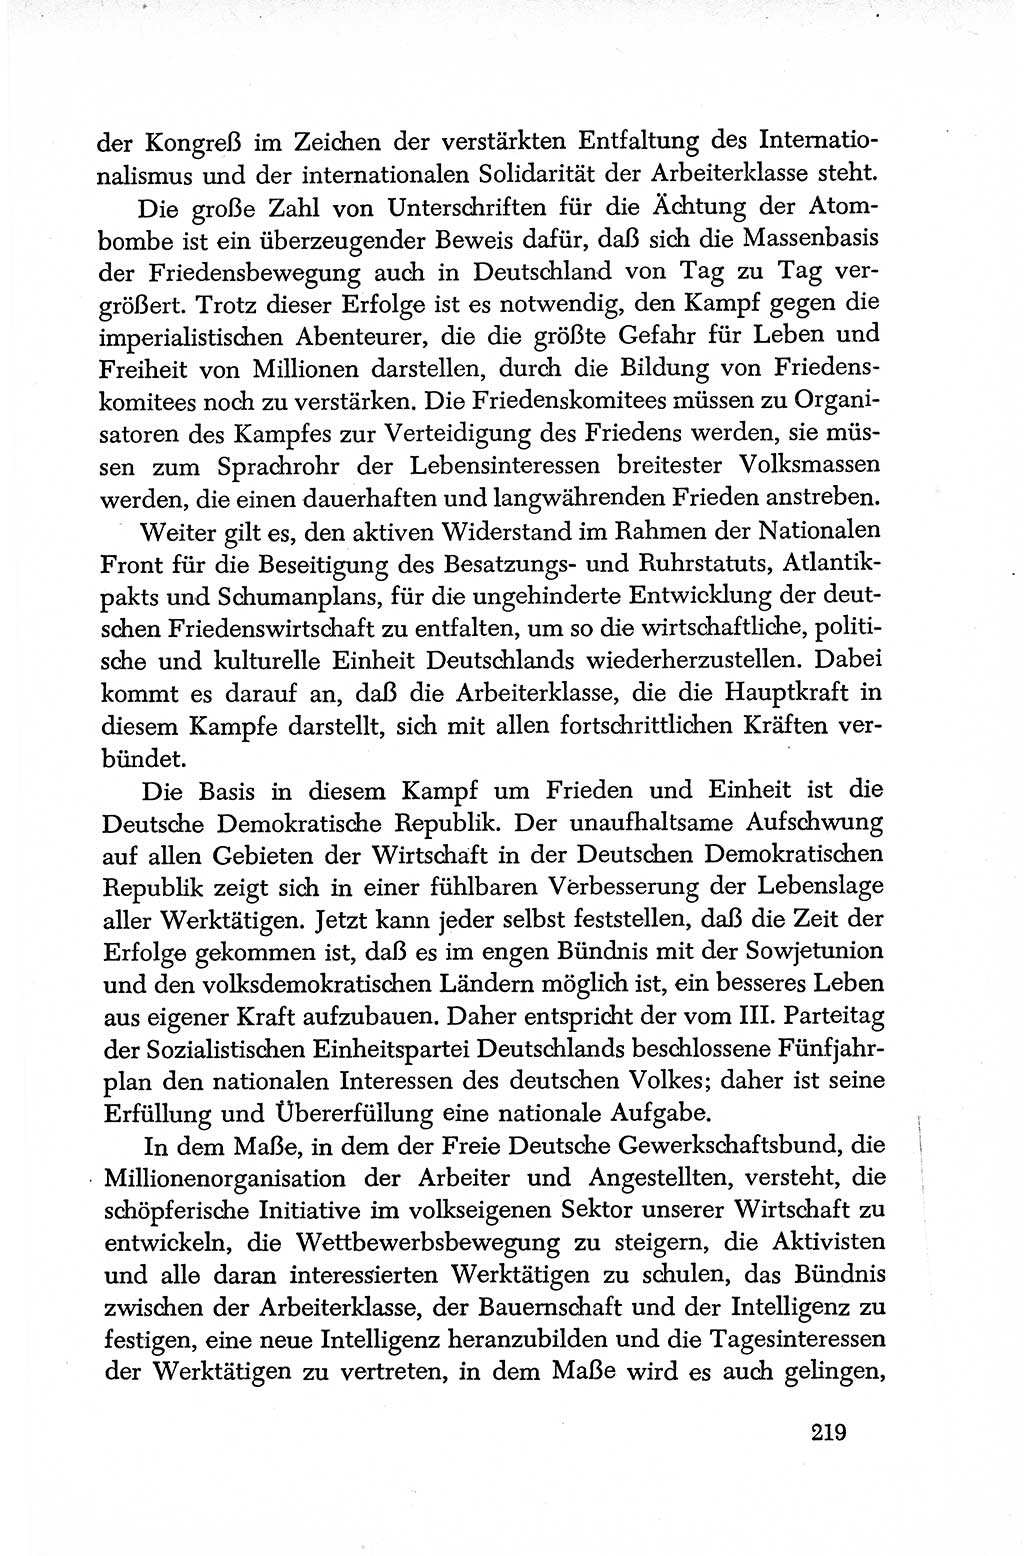 Dokumente der Sozialistischen Einheitspartei Deutschlands (SED) [Deutsche Demokratische Republik (DDR)] 1950-1952, Seite 219 (Dok. SED DDR 1950-1952, S. 219)